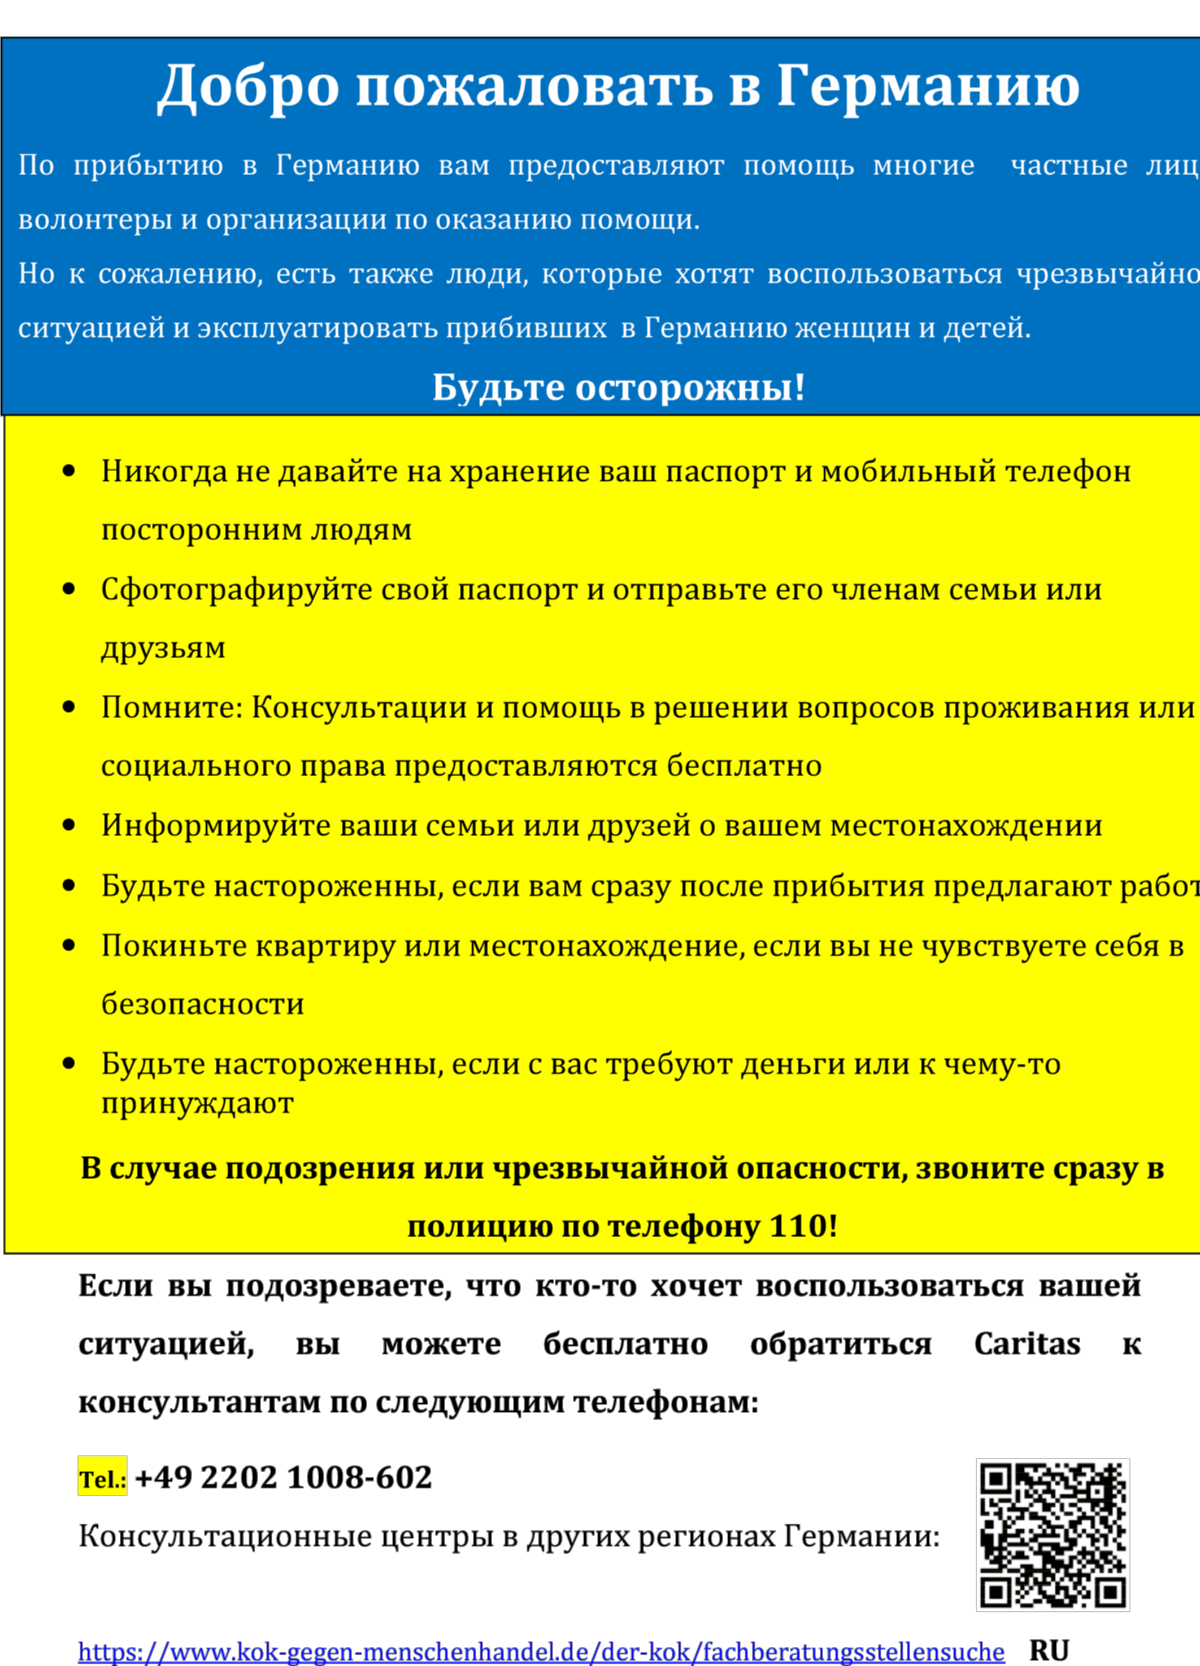 Flyer-Frauen-Info-Ukraine_bunt_RussischA6